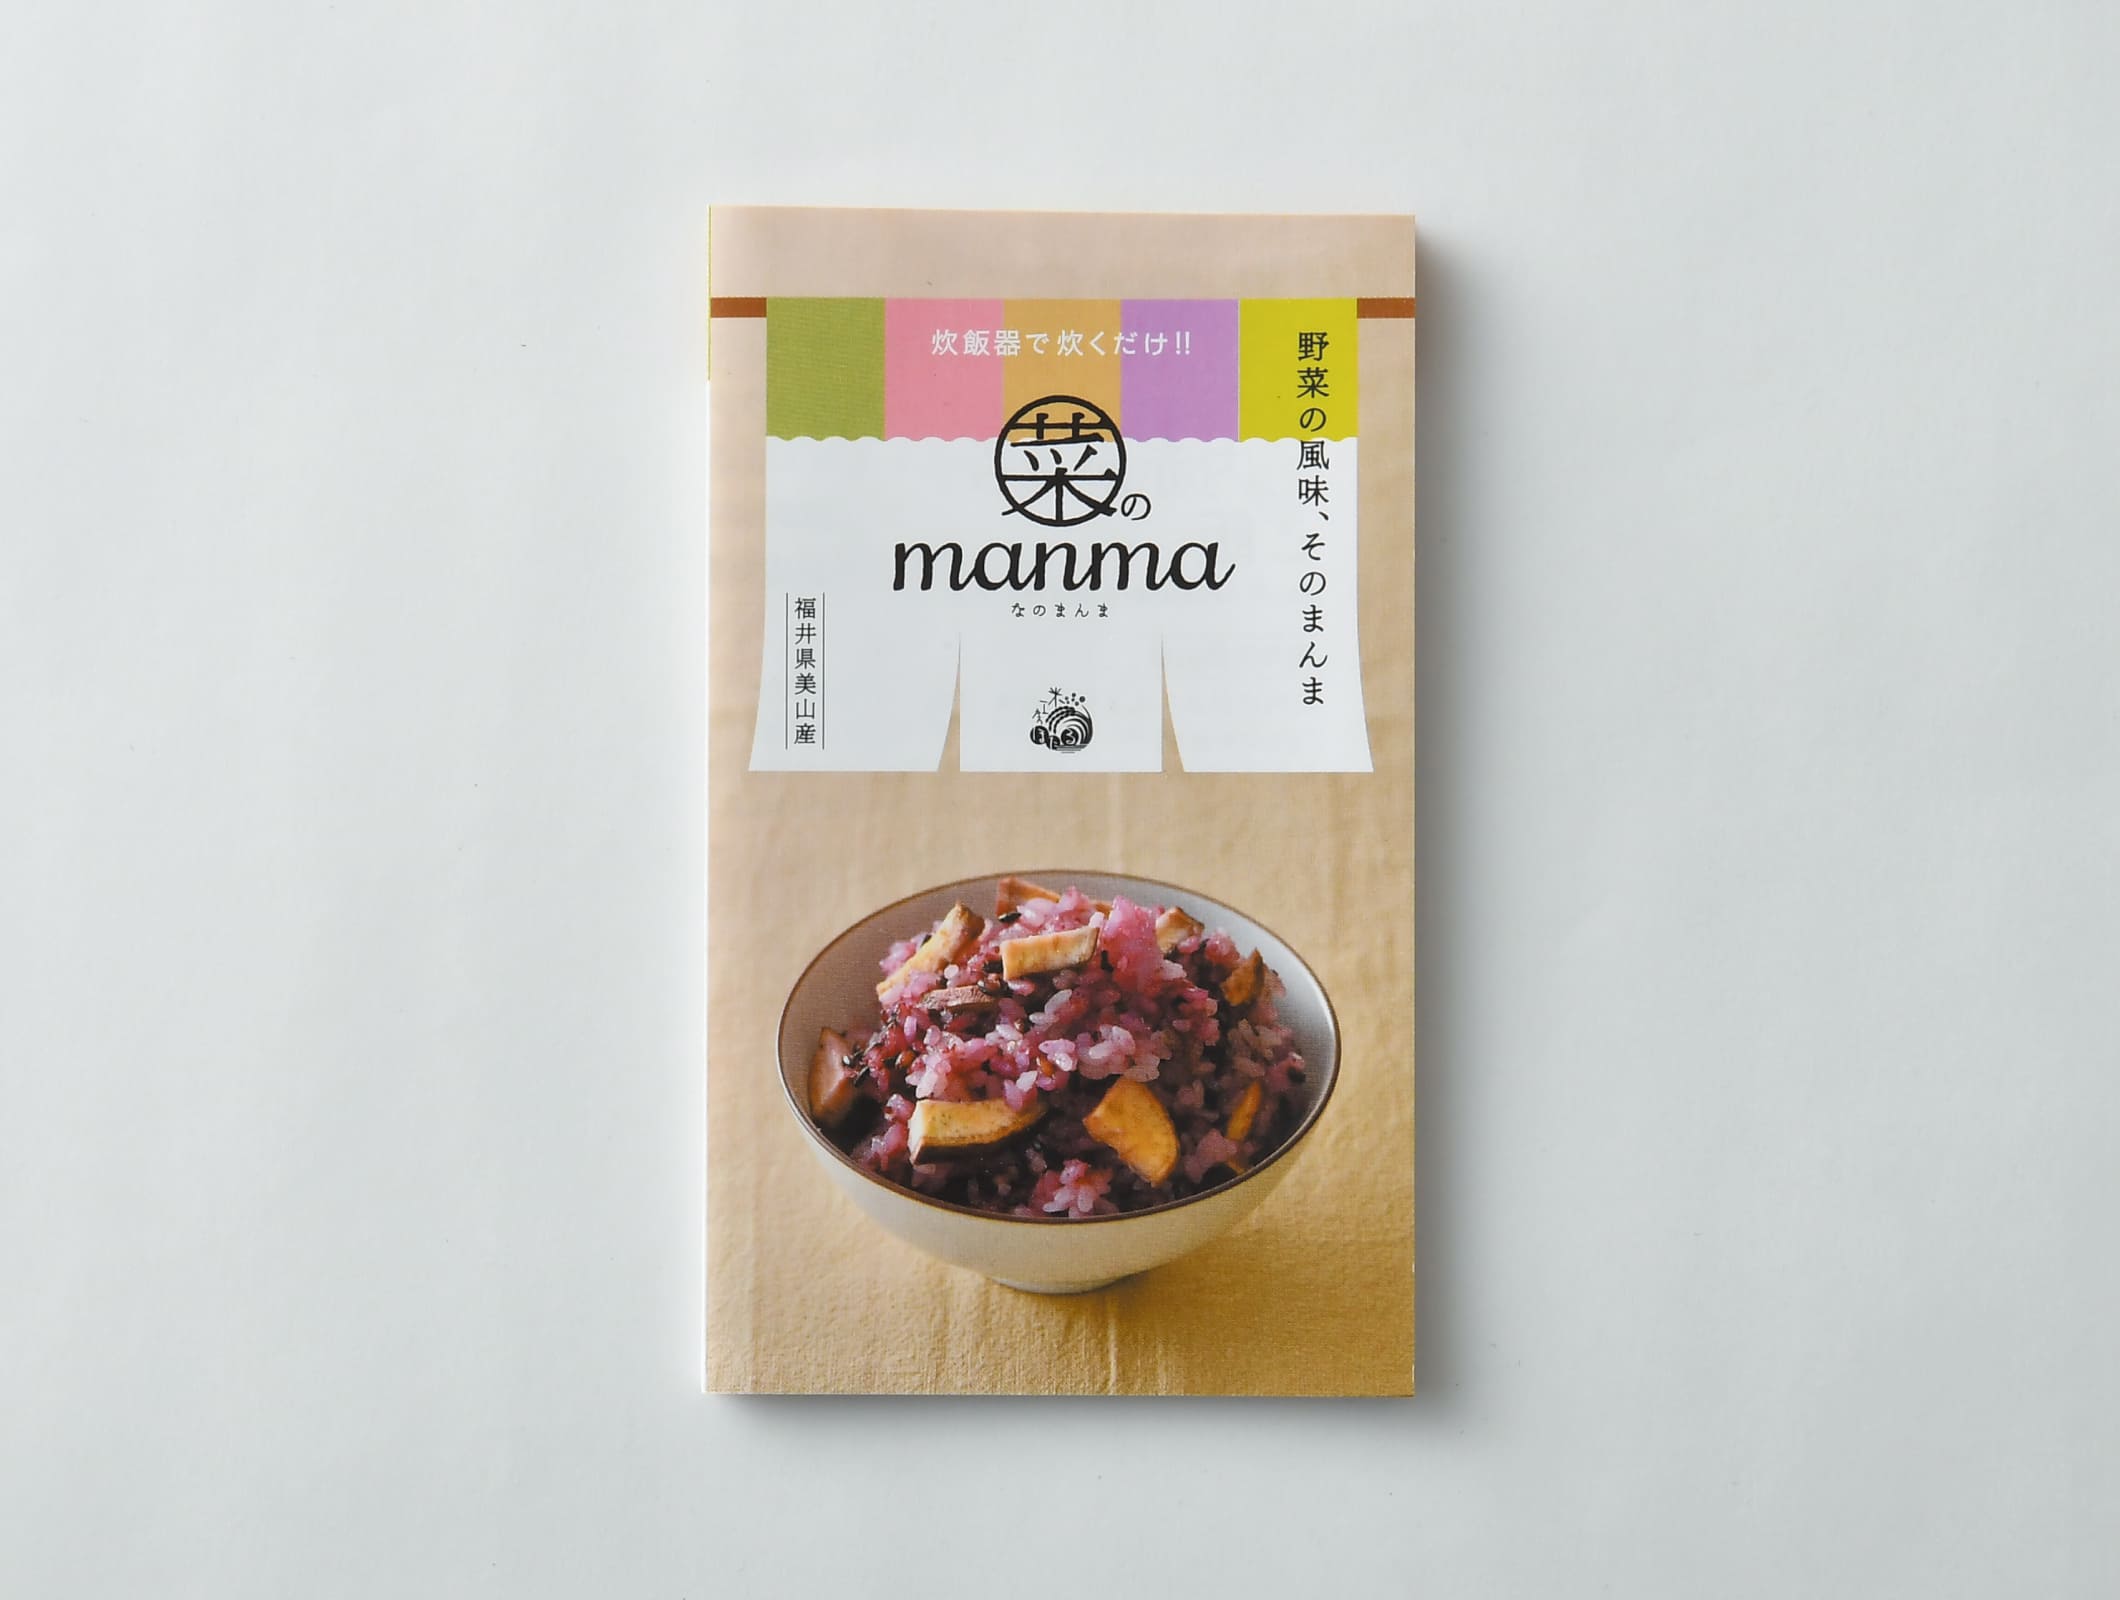 米工房ほたる 菜のmanma リーフレット・POP